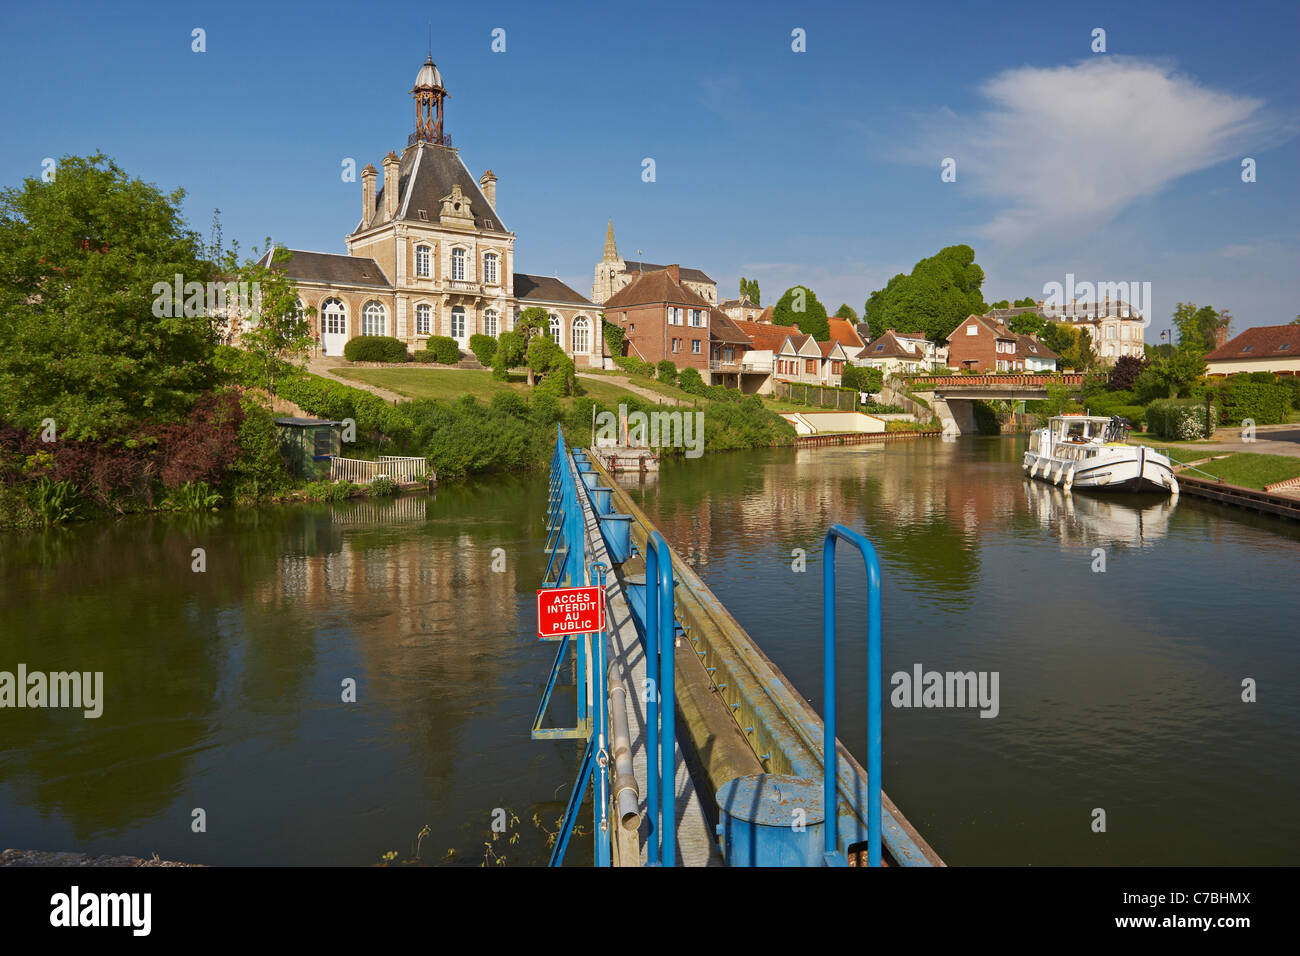 Il villaggio lungo il fiume Somme con il municipio e la casa galleggiante, Dept. Somme Picardia, Francia, Europa Foto Stock